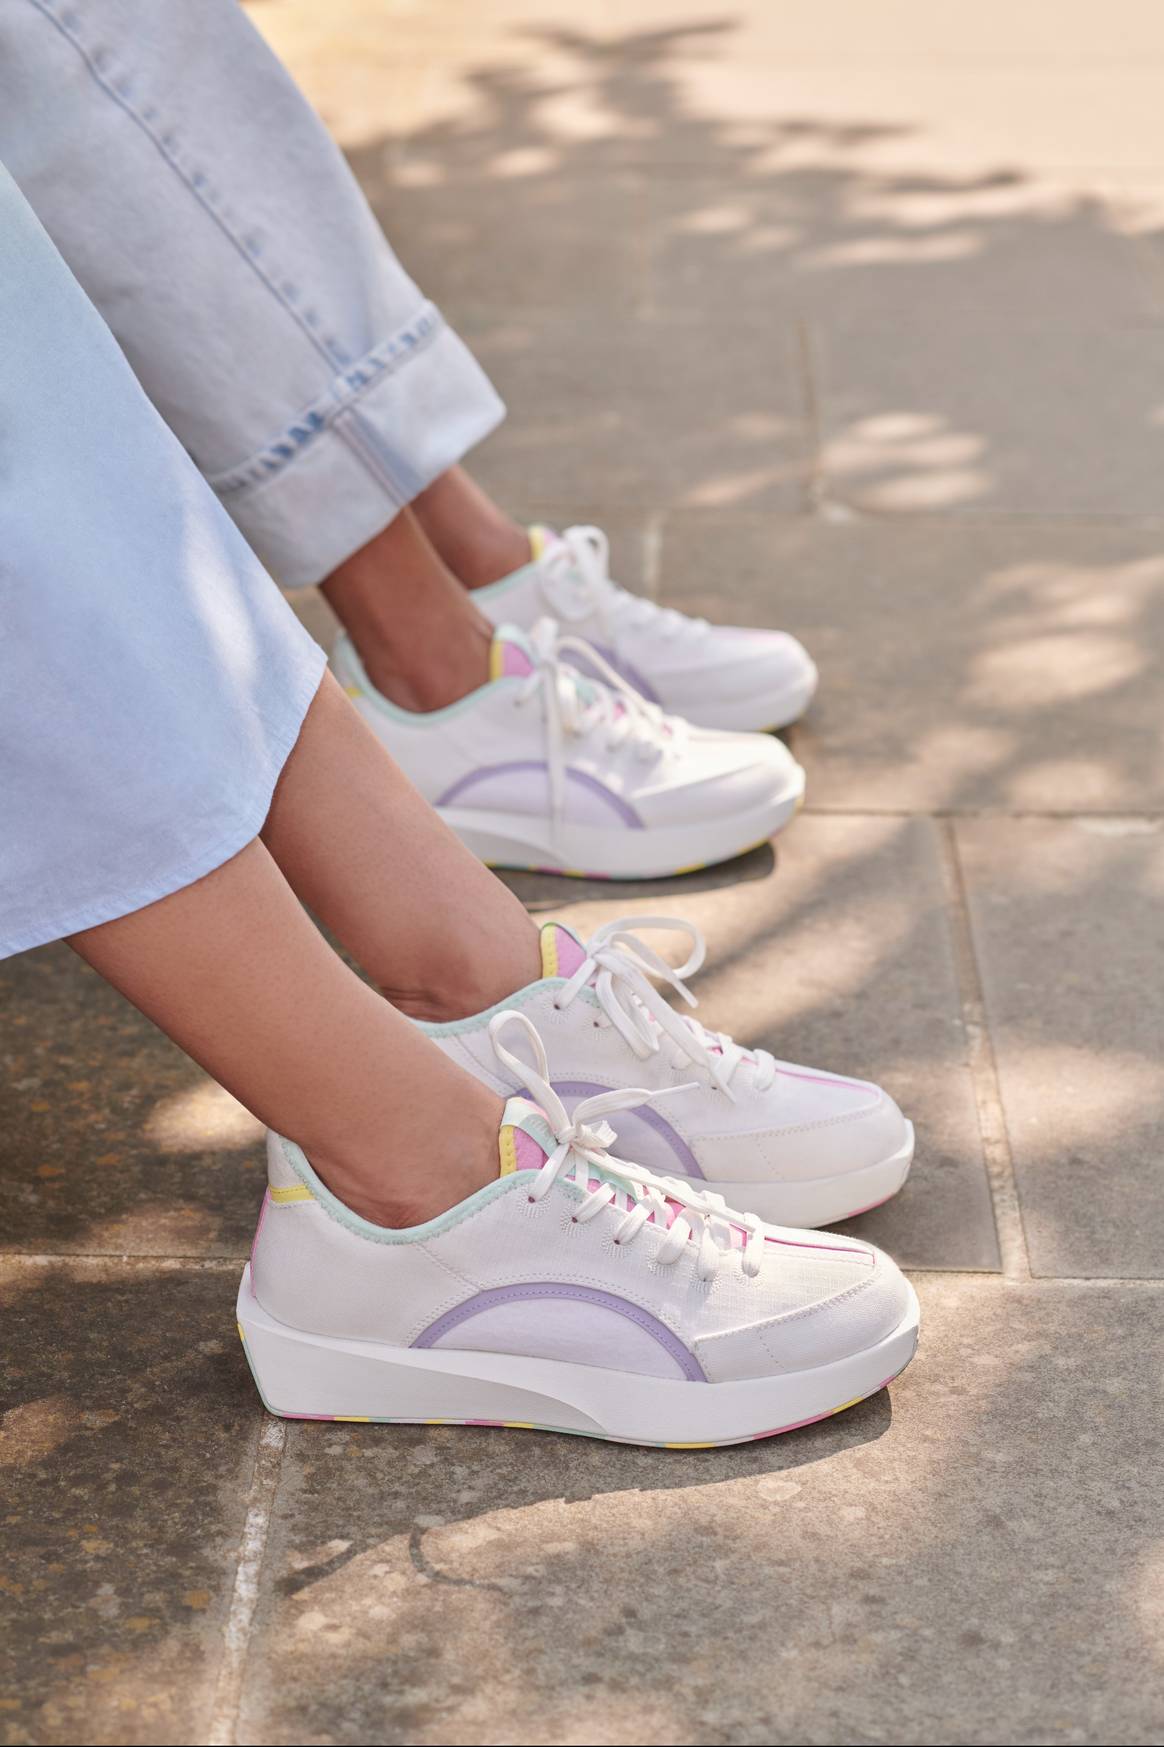 Allbirds Taps Olivia Rubin to Codesign Riser Sneaker For Artist Series